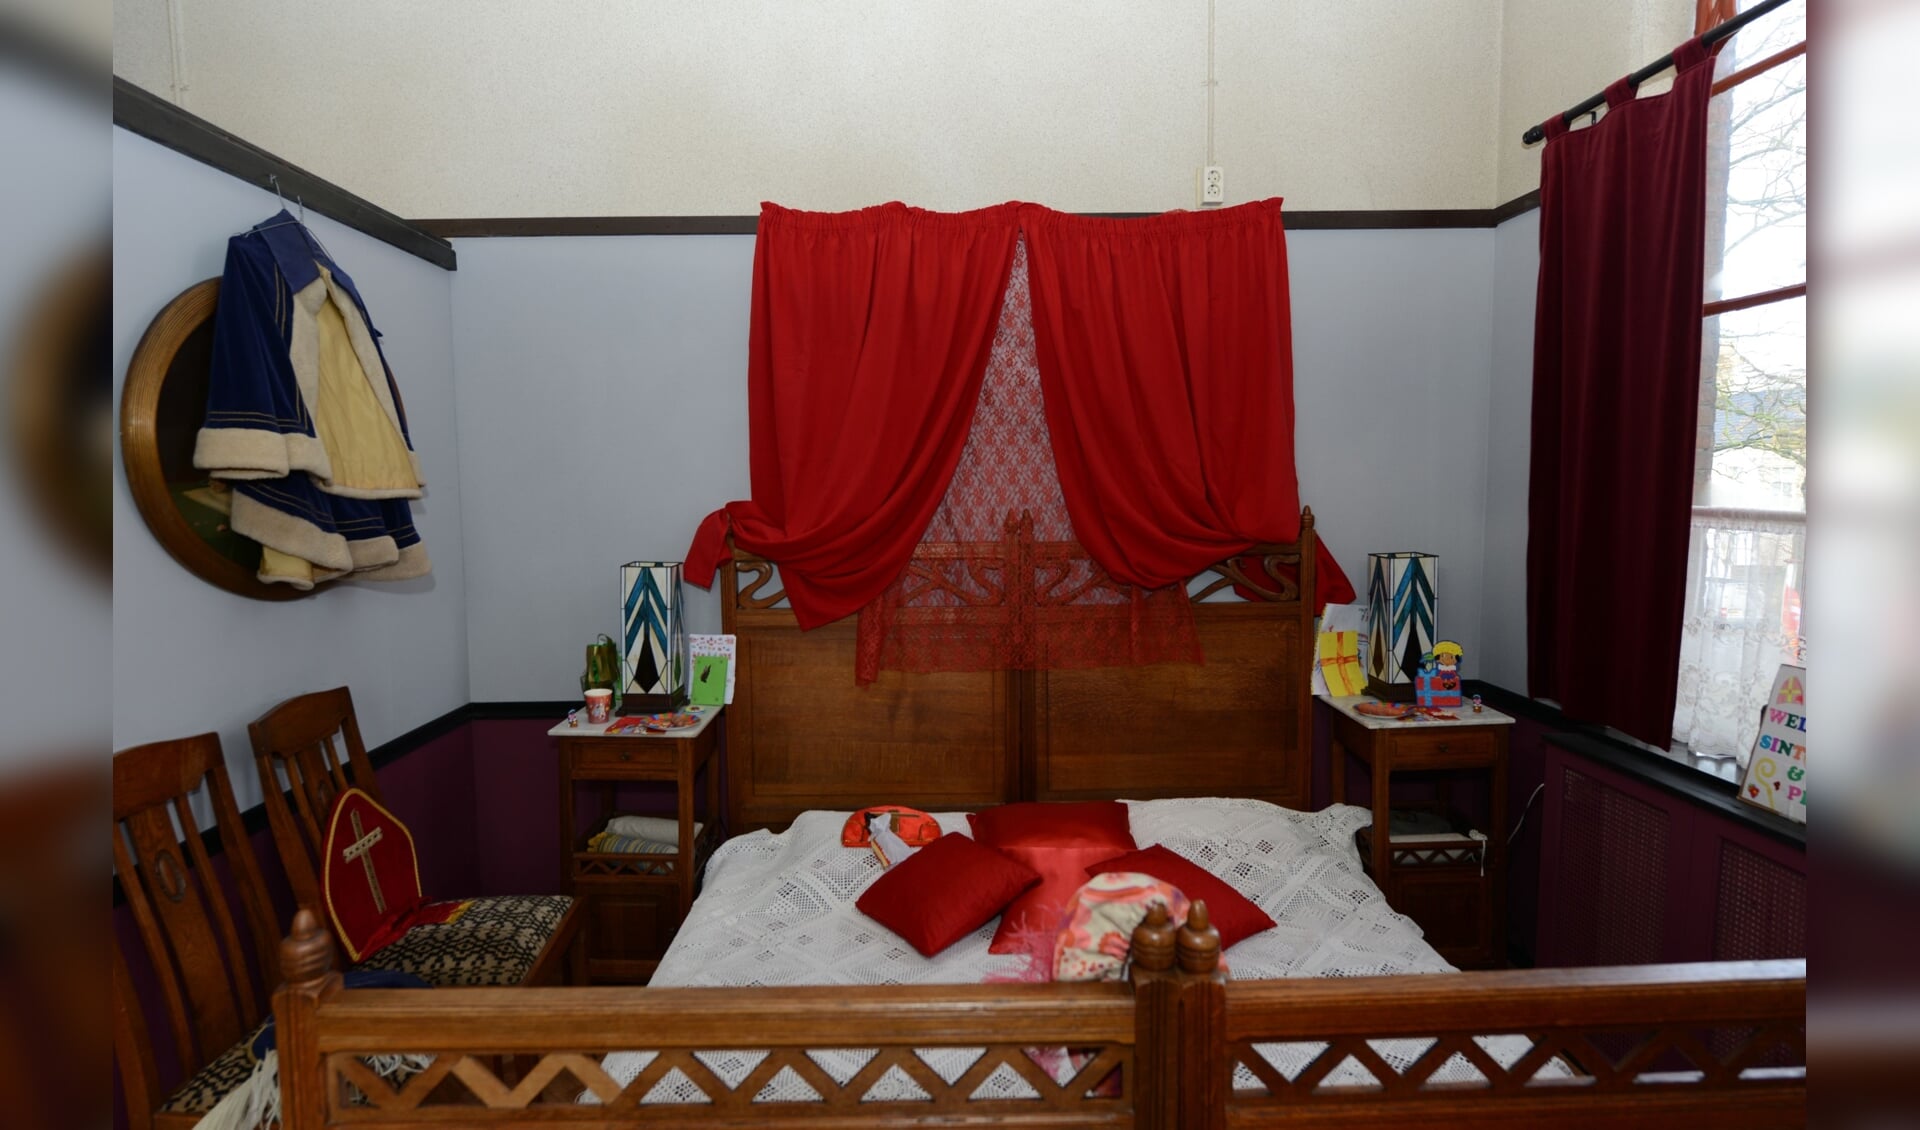 In deze slaapkamer rust de Sint deze weken uit van zijn lange nachten.